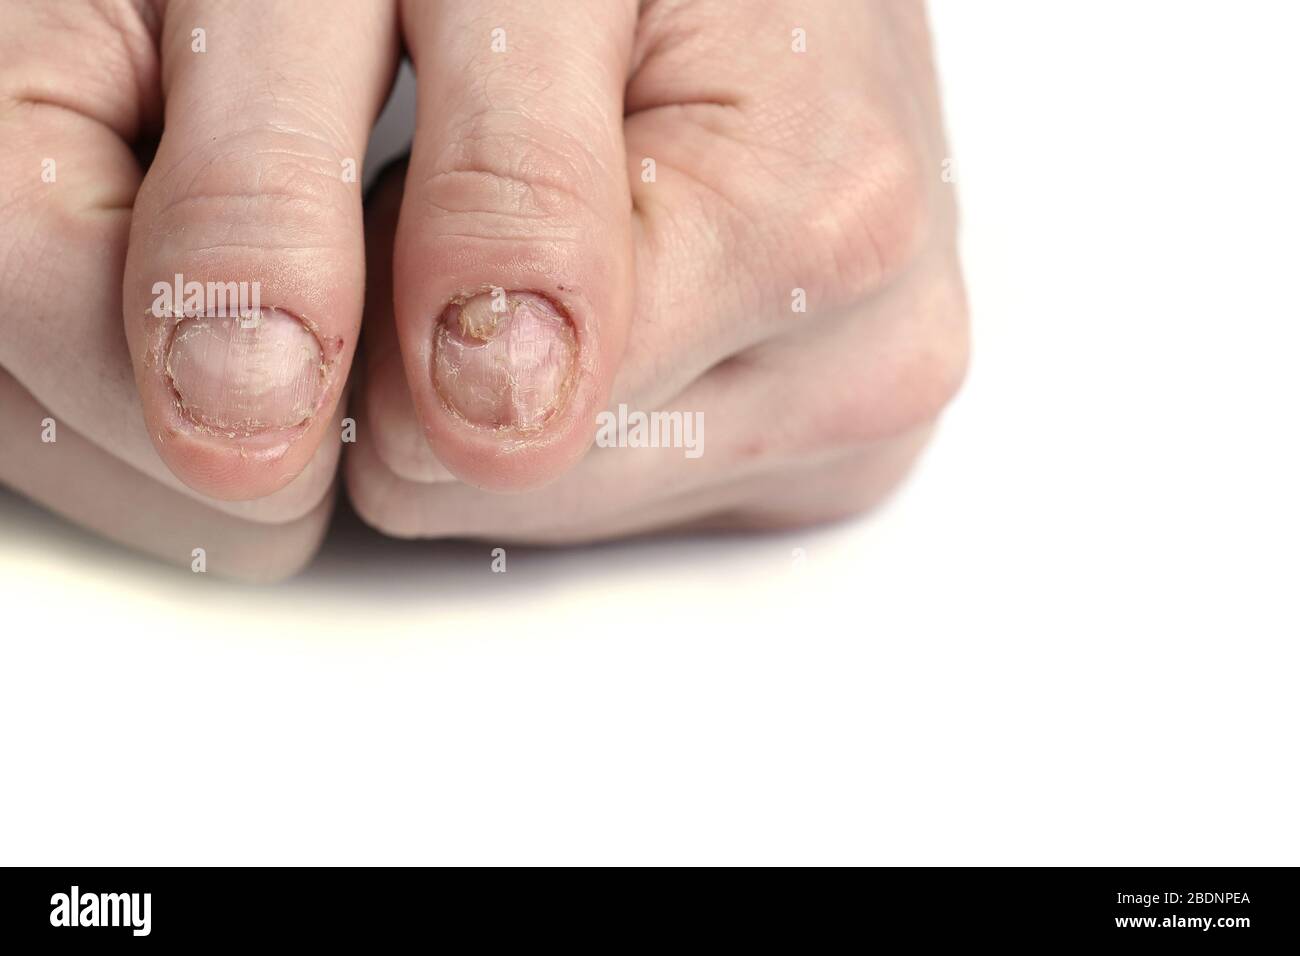 Nahaufnahme von Nagelpilz-Infektion. Pilzinfektion auf Nägel Hand, Finger  mit Onychomykose, Schäden an der menschlichen Hand Stockfotografie - Alamy